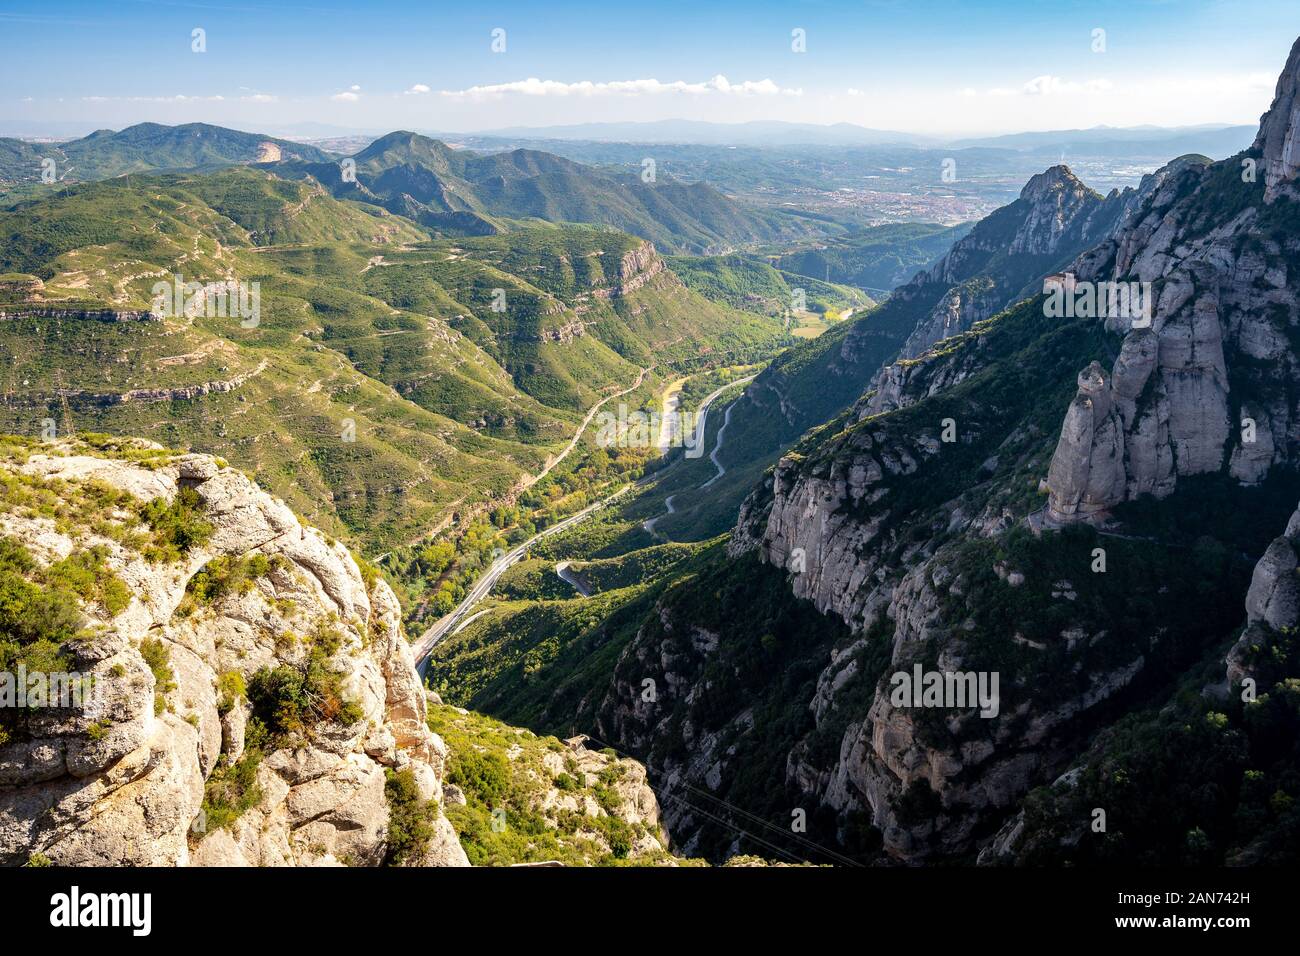 Montserrat mountain range in Spain Stock Photo